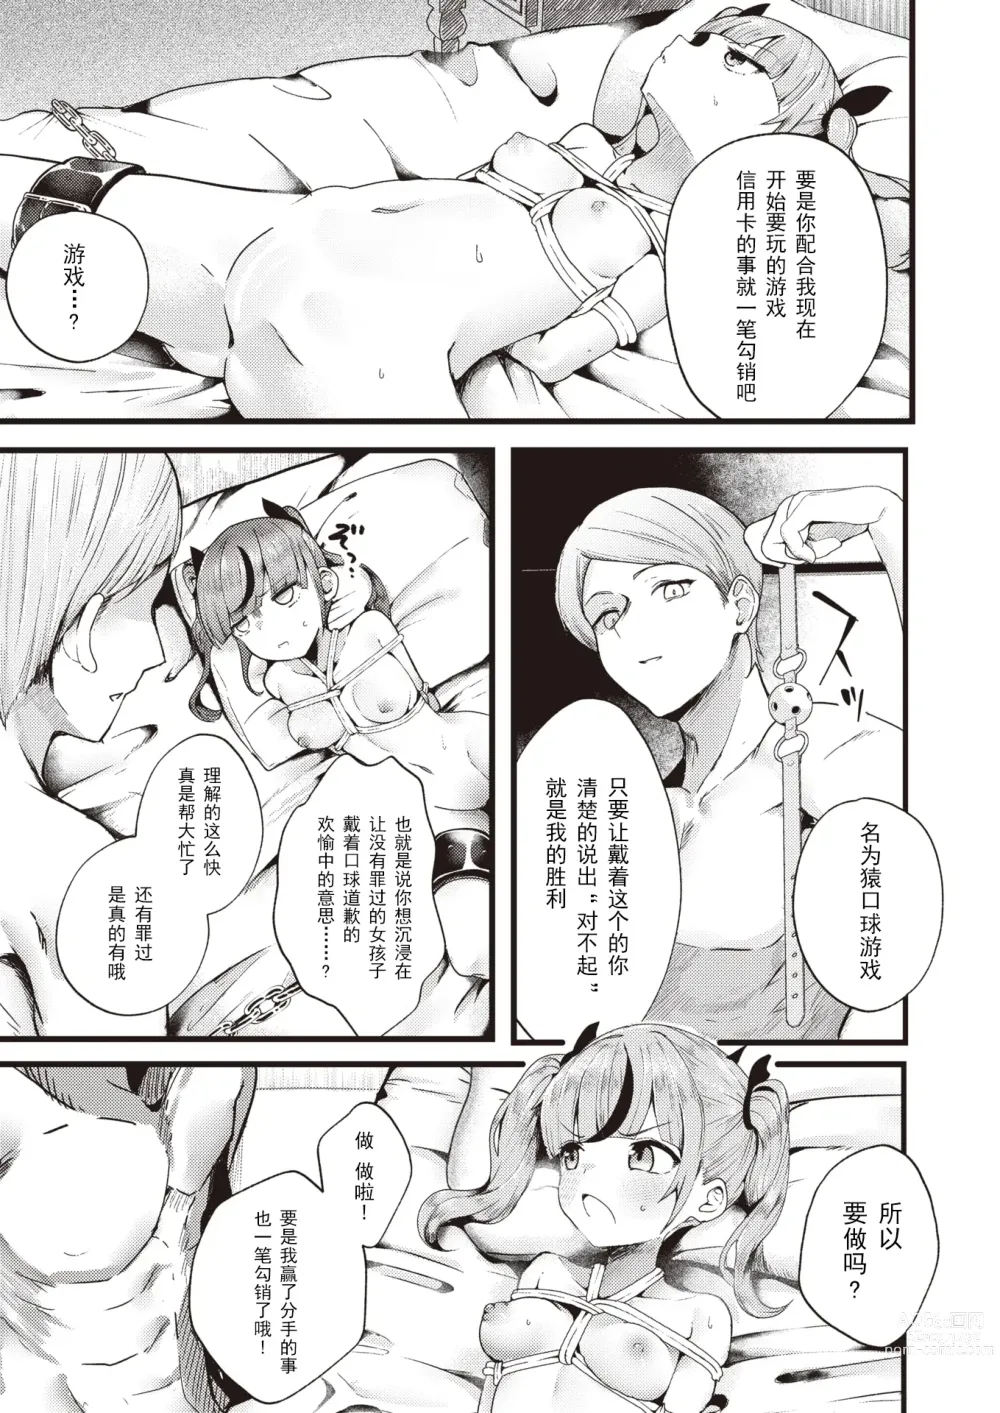 Page 9 of manga 就用身体來支付!